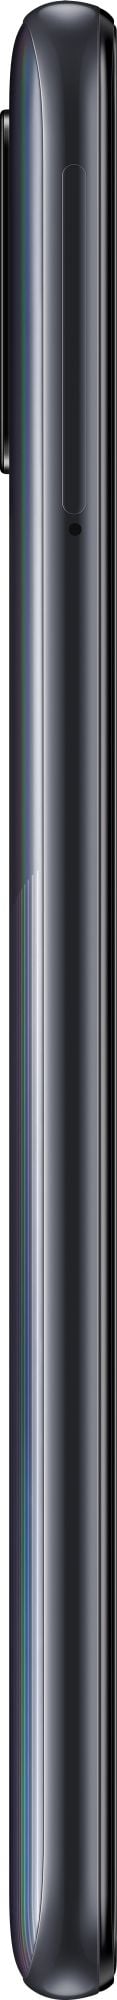 Samsung Galaxy A31 64GB Black